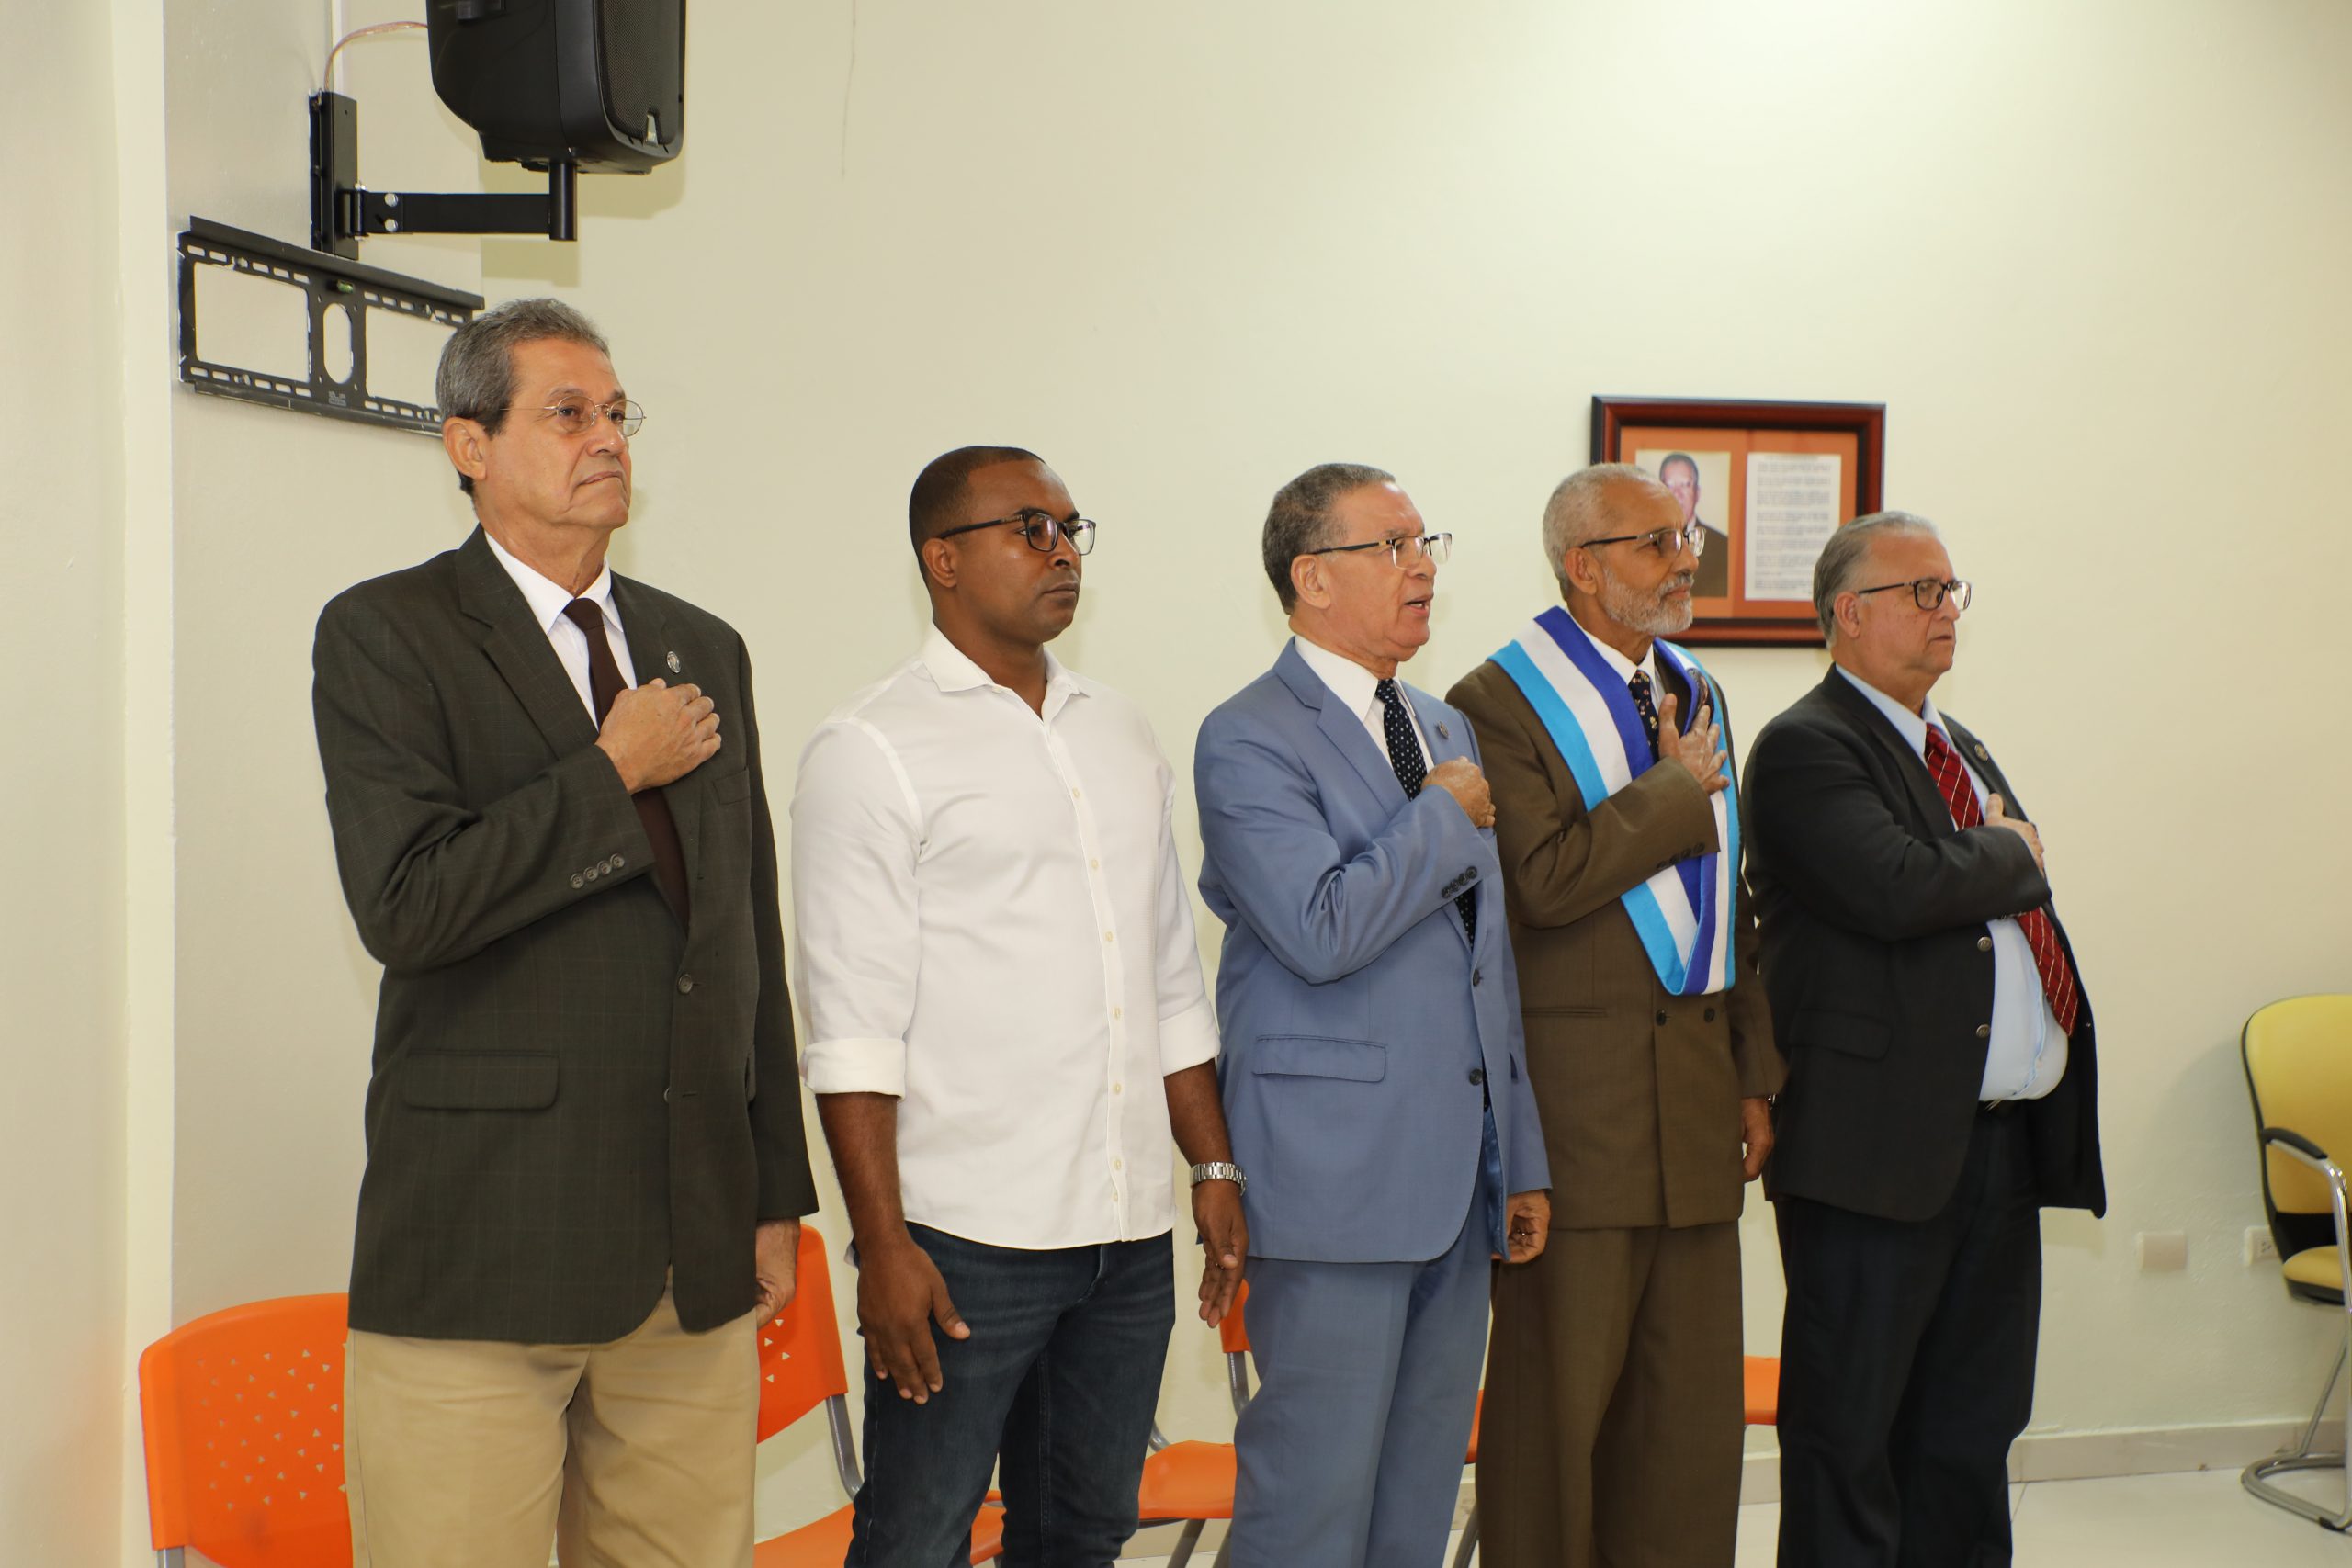 Acto de conferencia y juramentación de nuevos miembros del centro duartiano de San Juan